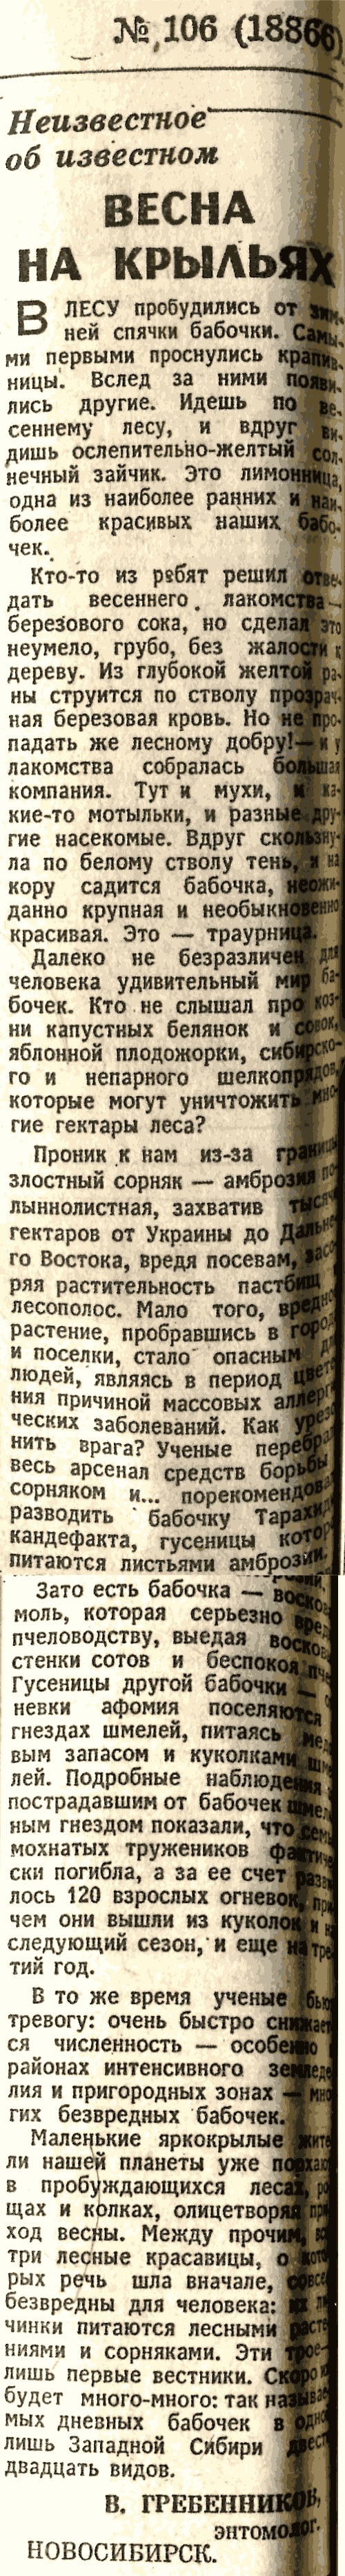 Весна на крыльях. В.С. Гребенников. Известия, 05.05.1978.